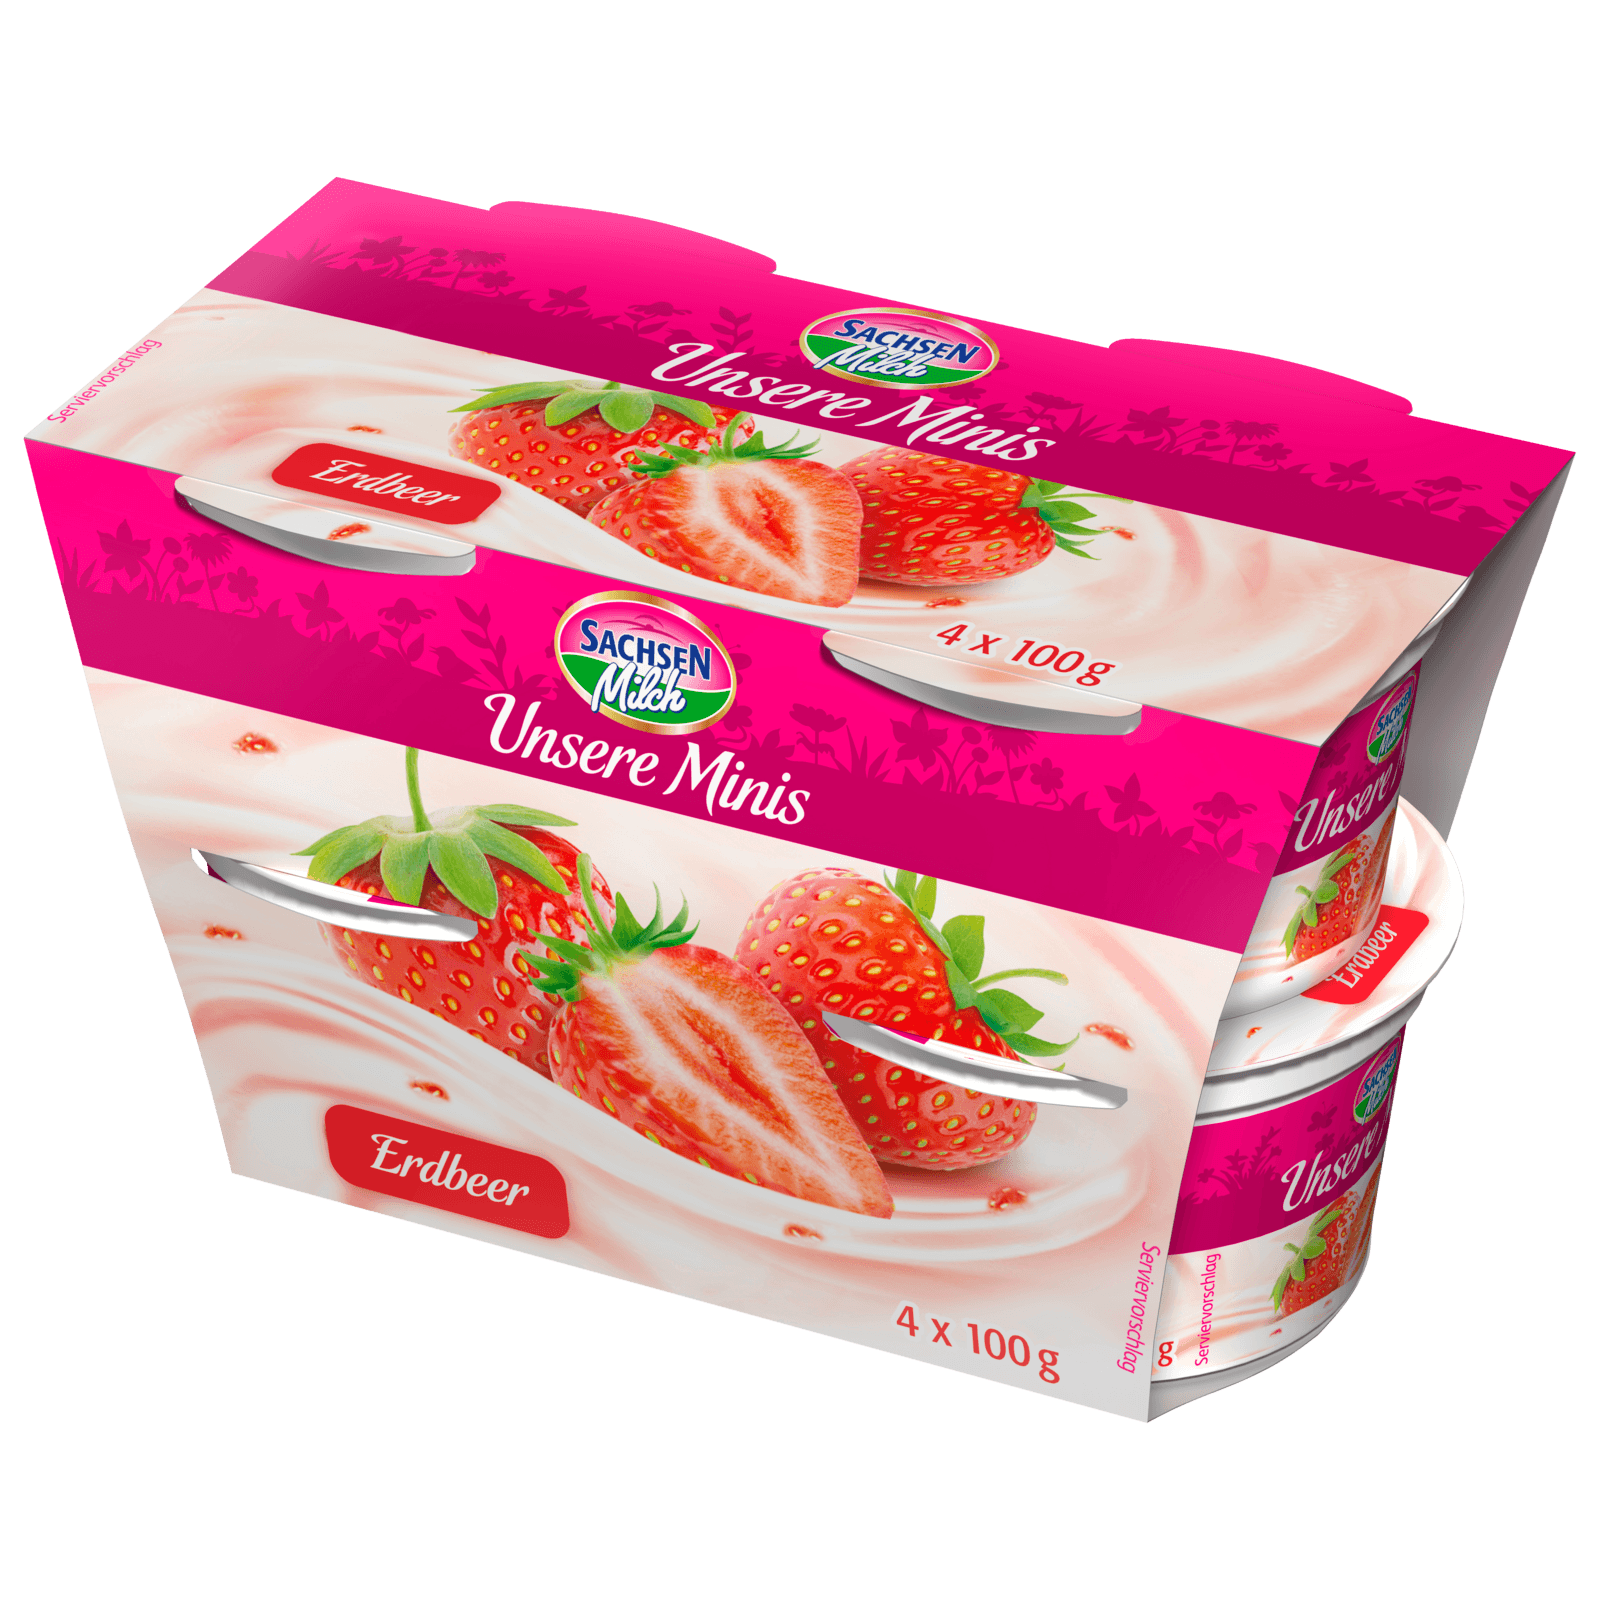 Sachsenmilch Unsere Minis Erdbeer 4x100g bei REWE online bestellen!